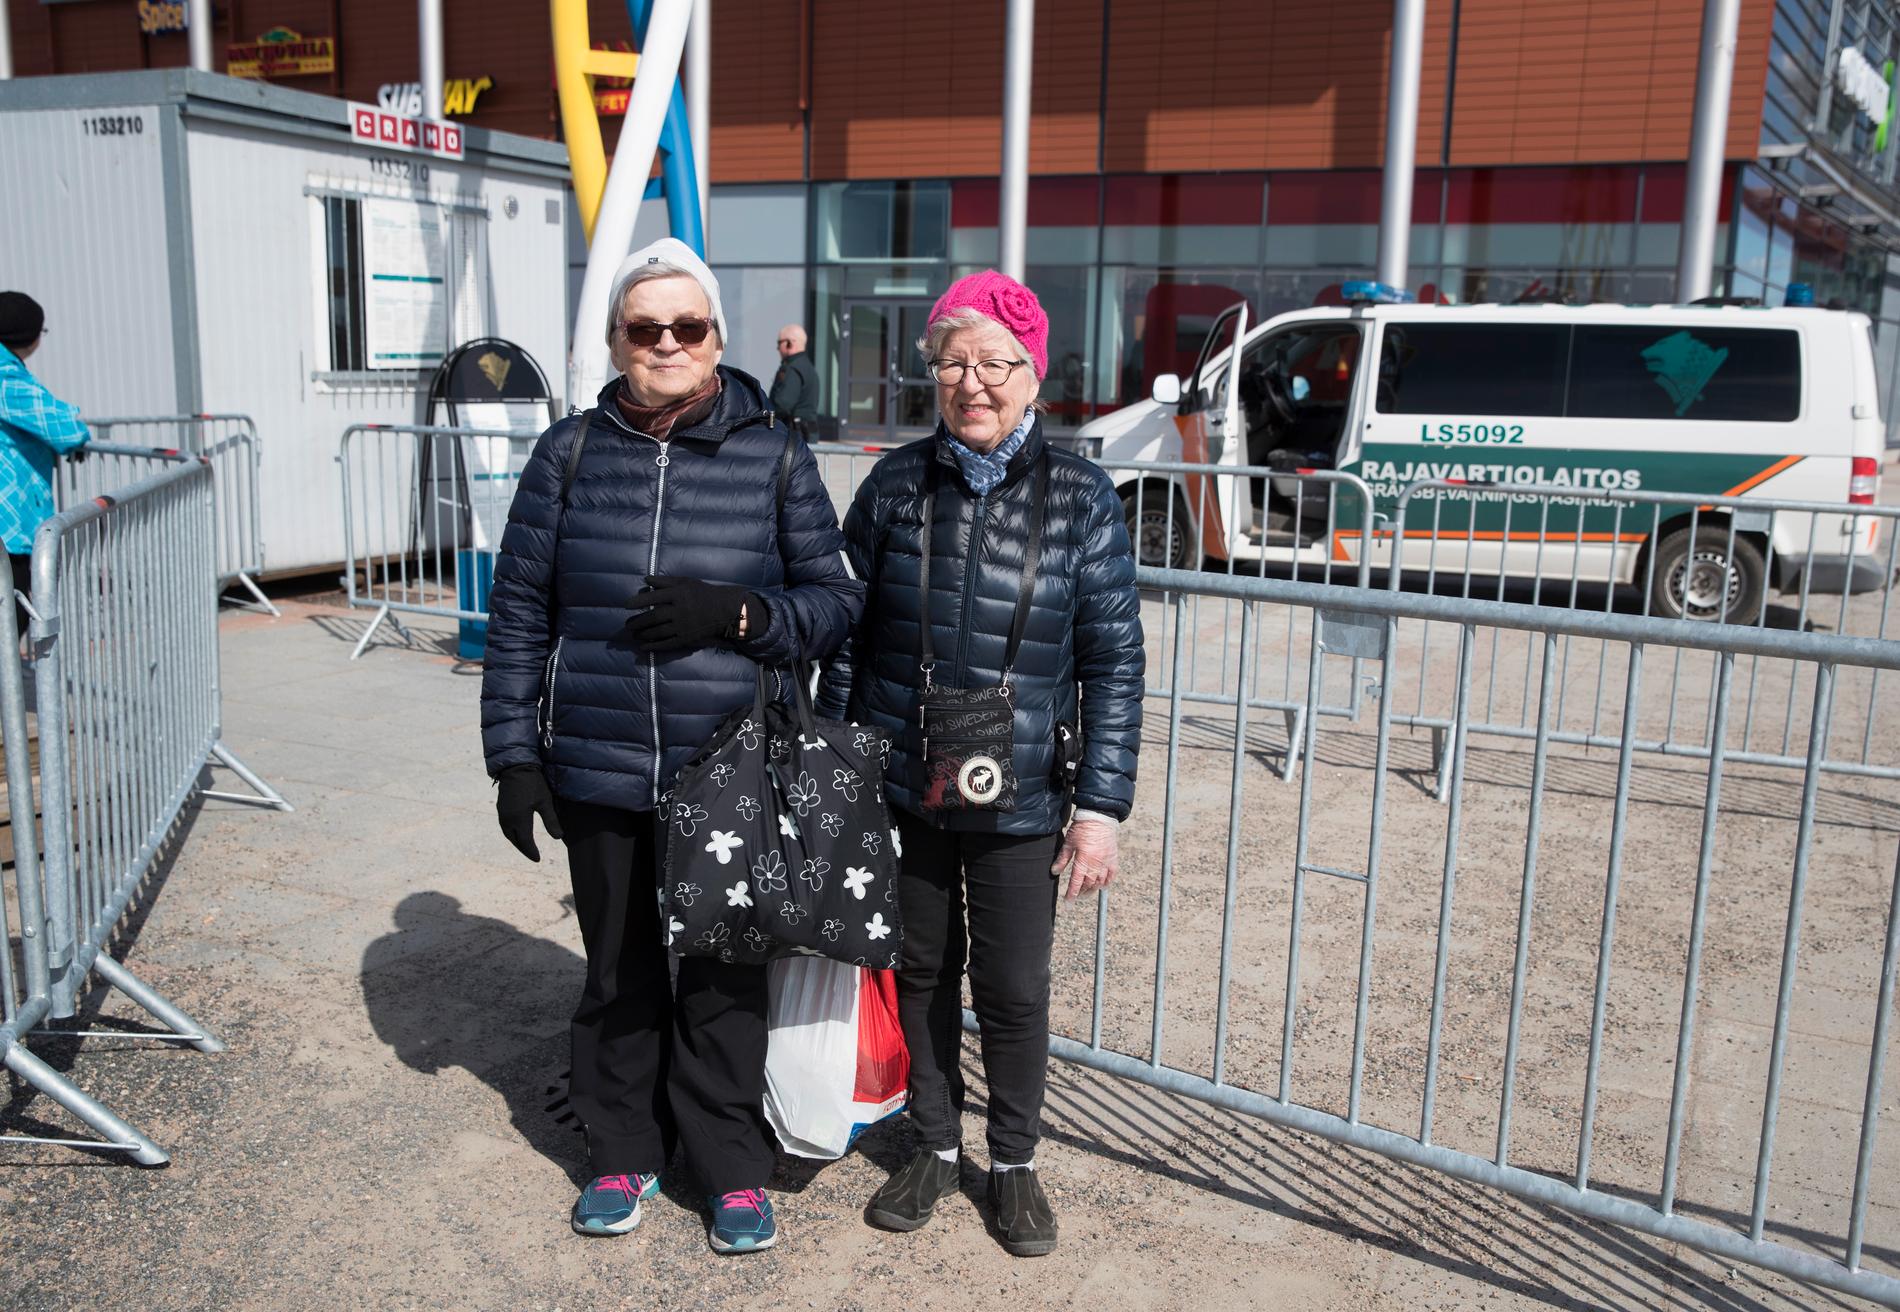 Olga Tauriainen och Helvi Mäntylä (till höger) är tillbaka i Haparanda efter att de varit och handlat i finska Torneå. Som finska medborgare tillåts de under särskilda tillfällen handla över gränserna.